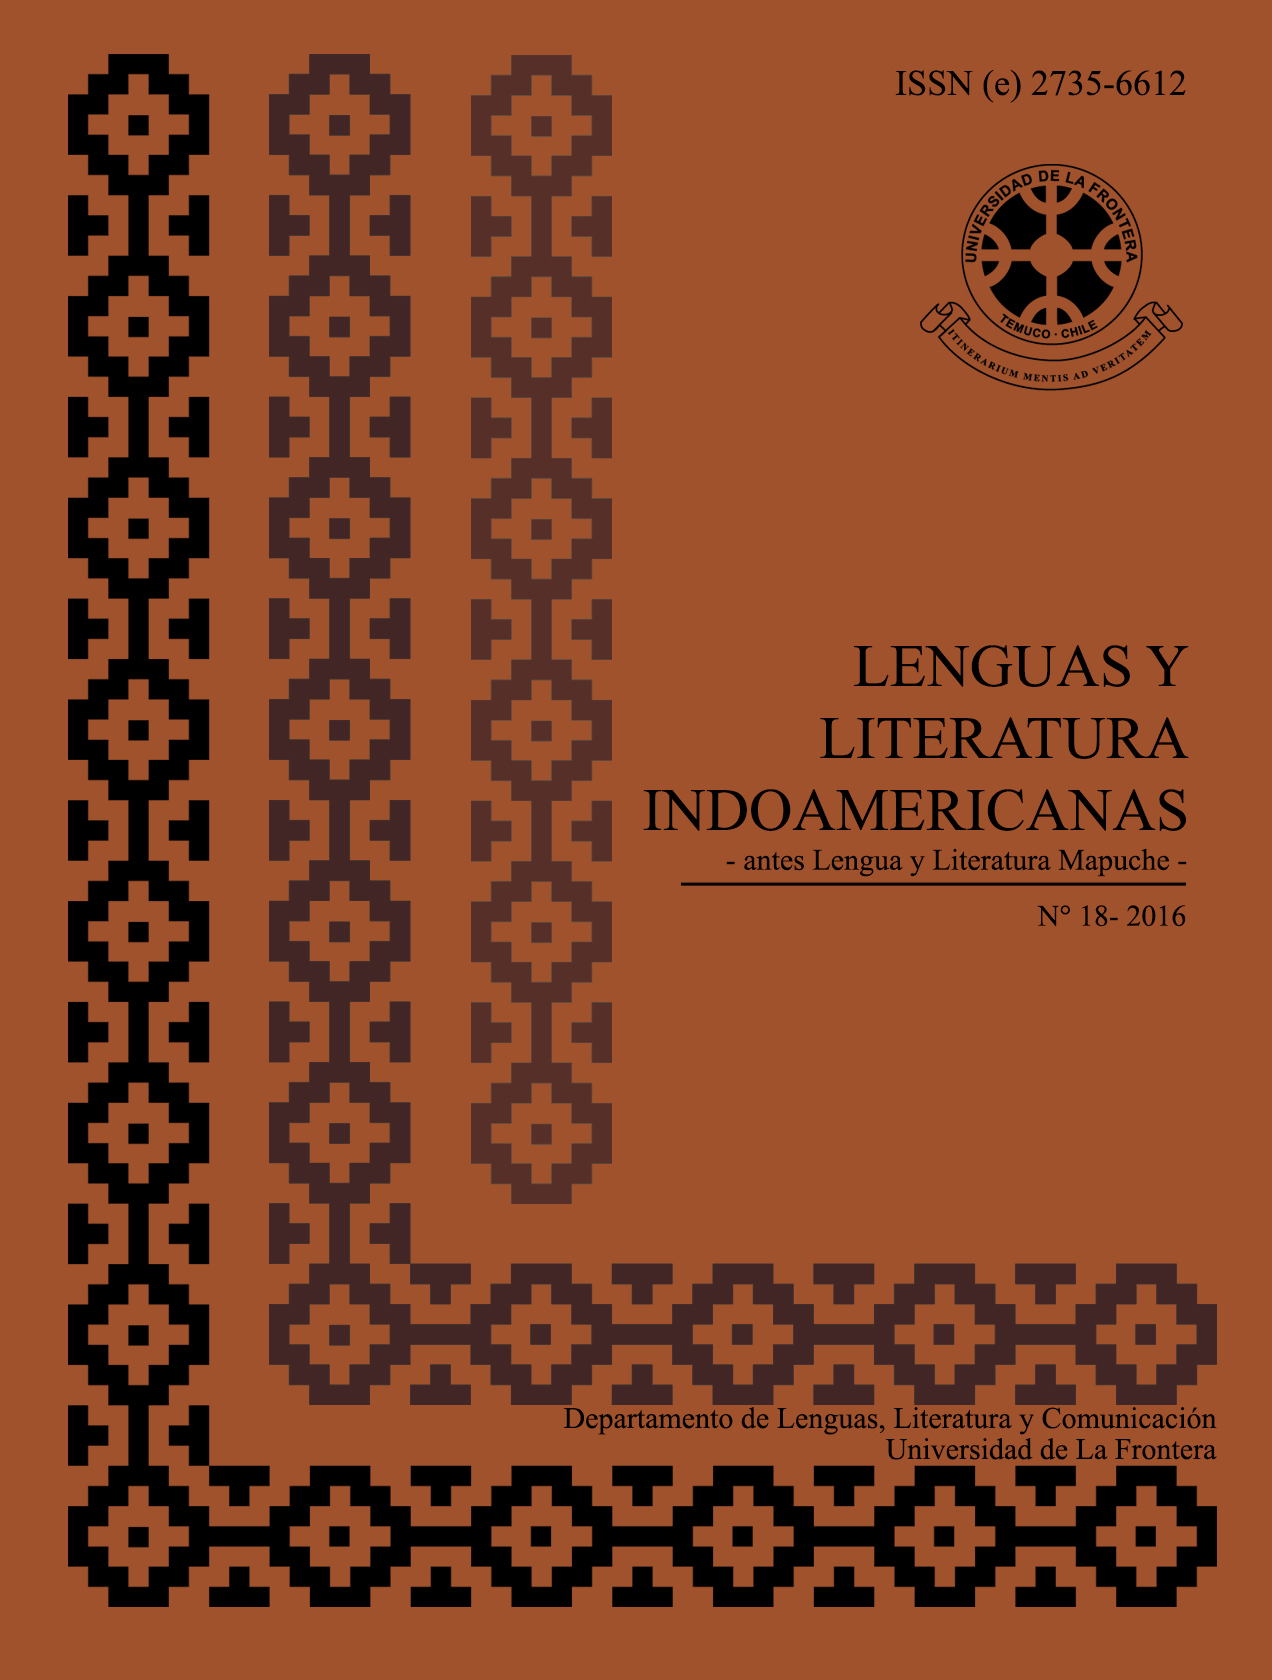 					View Vol. 18 No. 1 (2016): Revista de Lenguas y Literatura Indoamericanas (RLLI) 
				